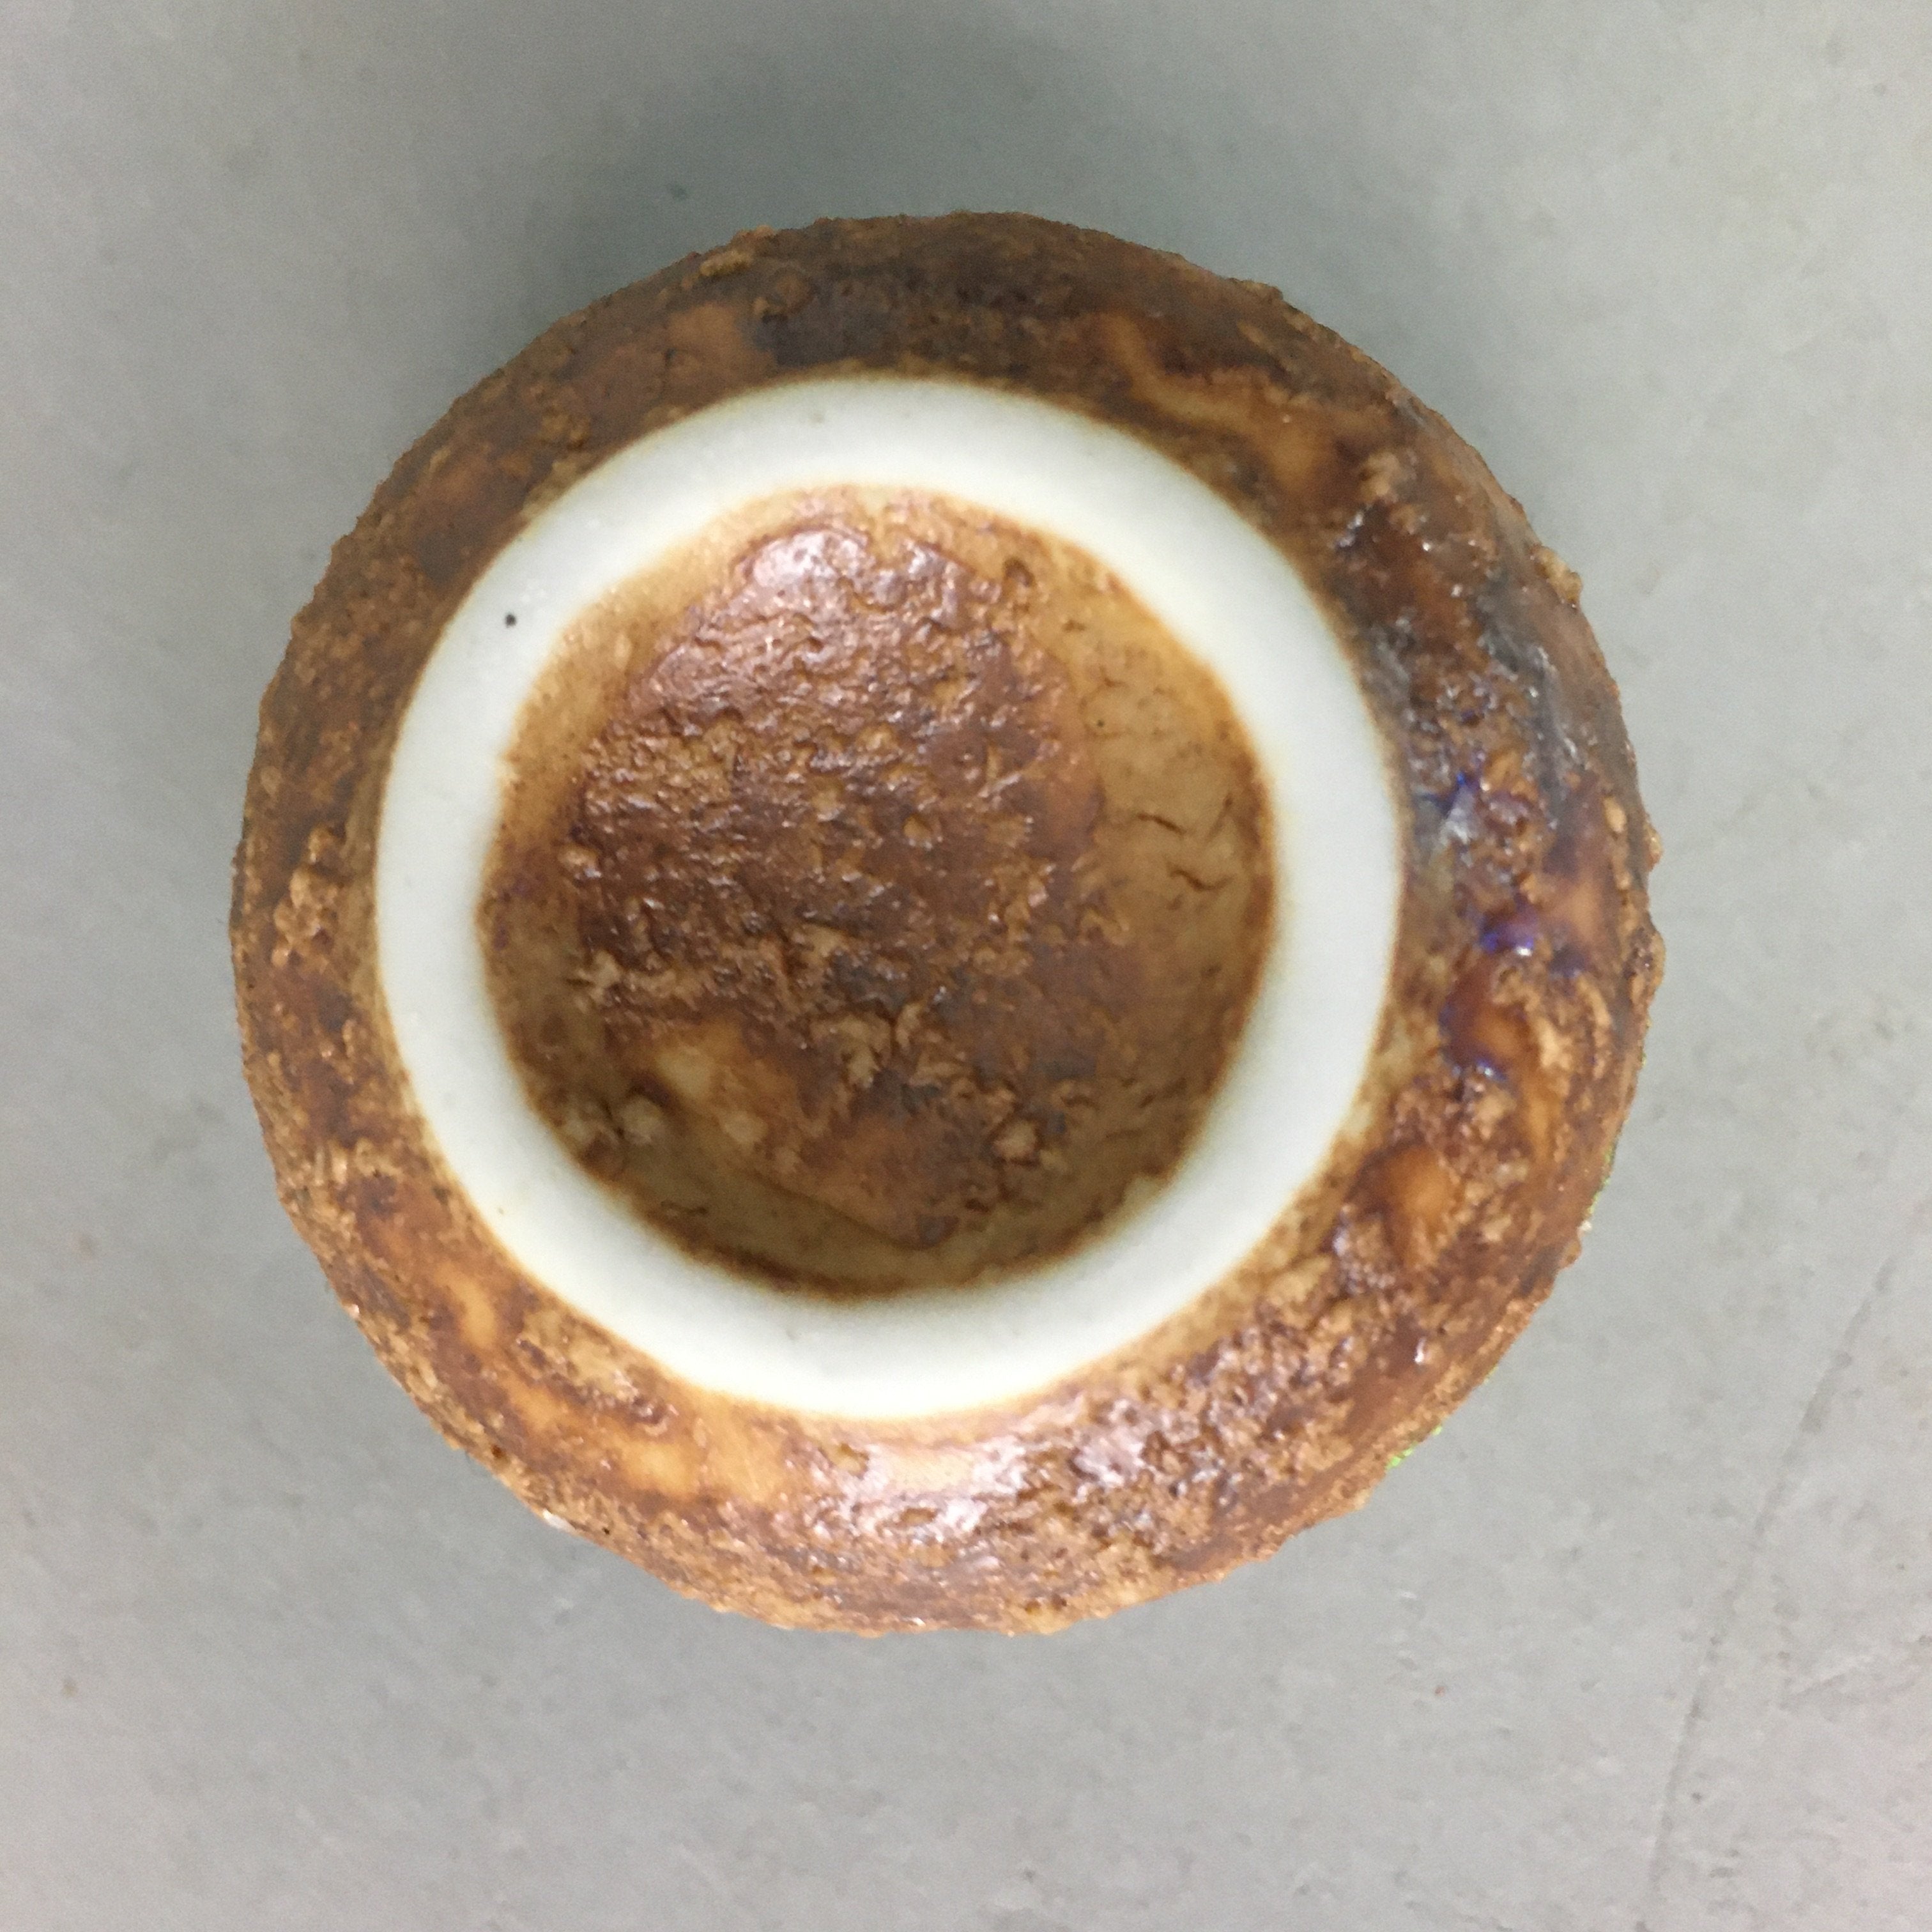 Japanese Ceramic Sake Cup Guinomi Sakazuki Vtg Pottery Brown Rough GU706